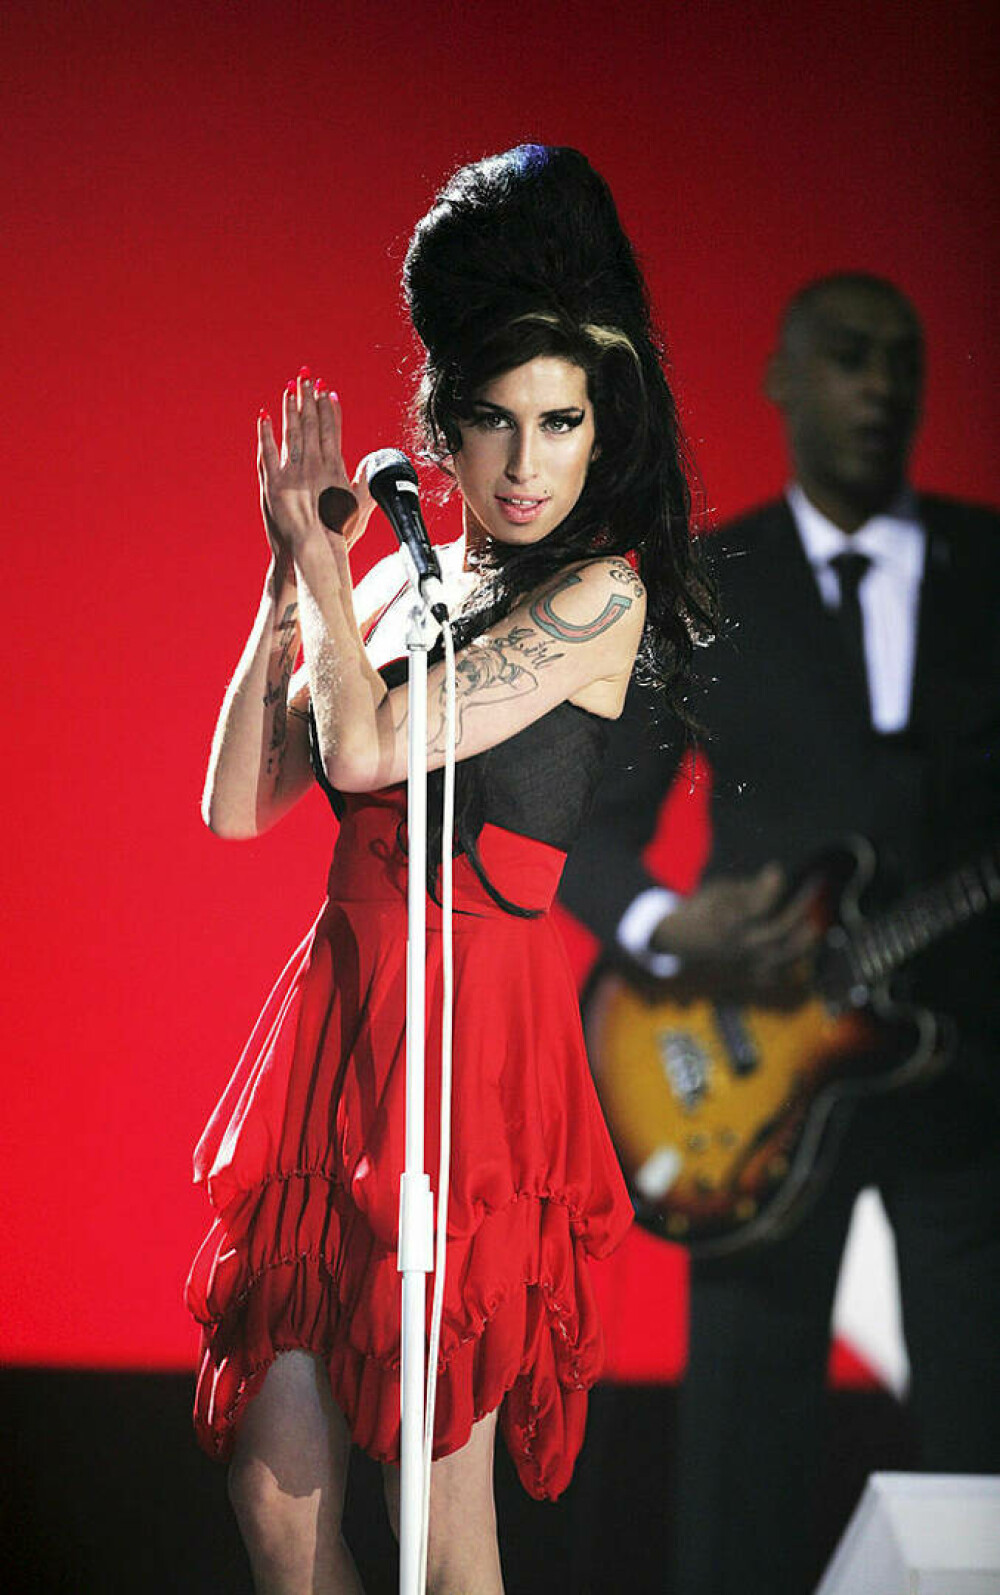 Imagini de colecție cu Amy Winehouse. Cântăreața ar fi împlinit astăzi 40 de ani | FOTO - Imaginea 13